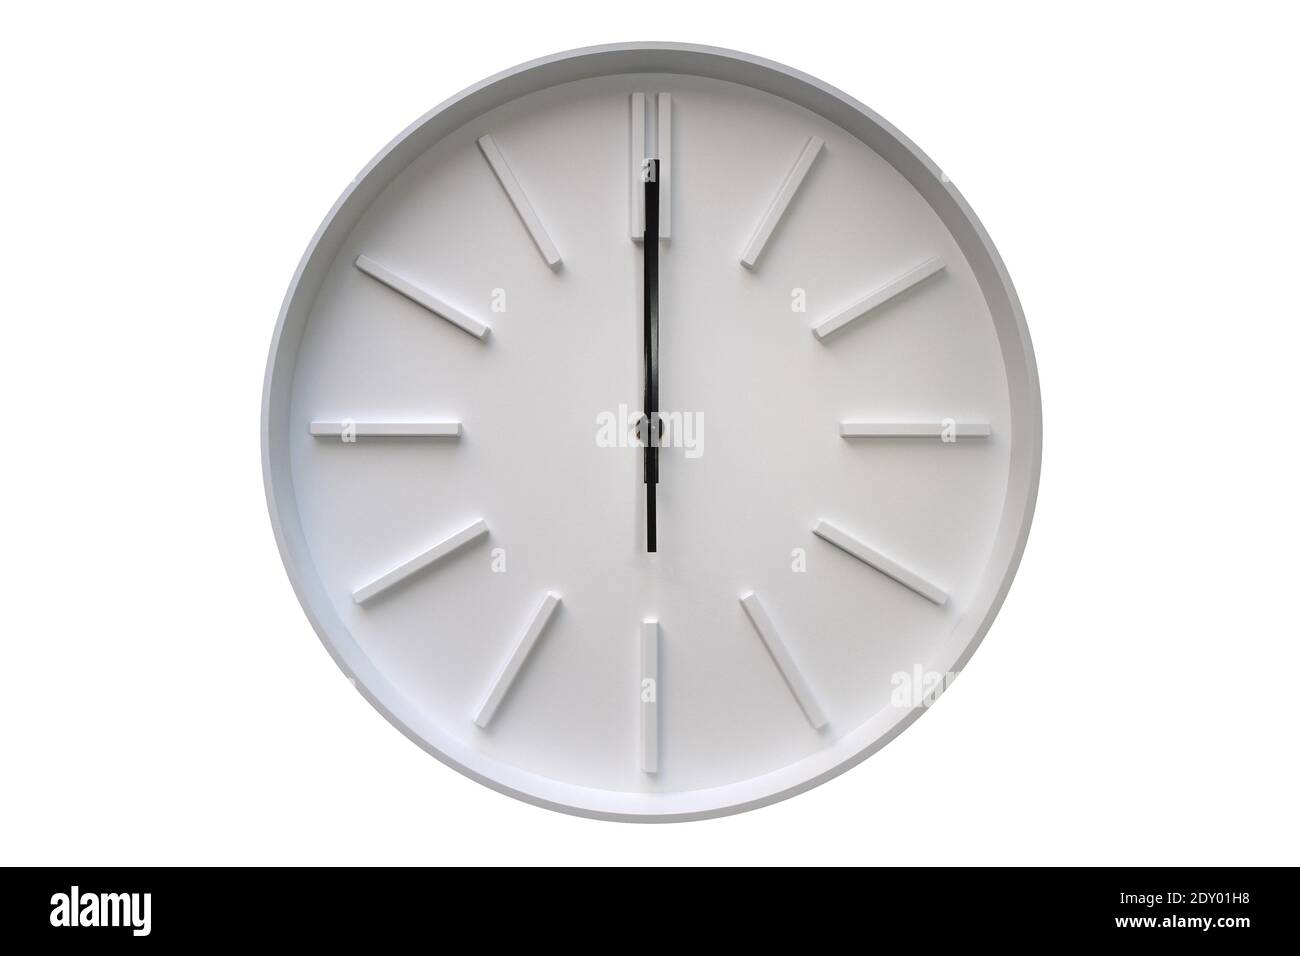 twelve o'clock on analog round white wall clock isolated on white background Stock Photo